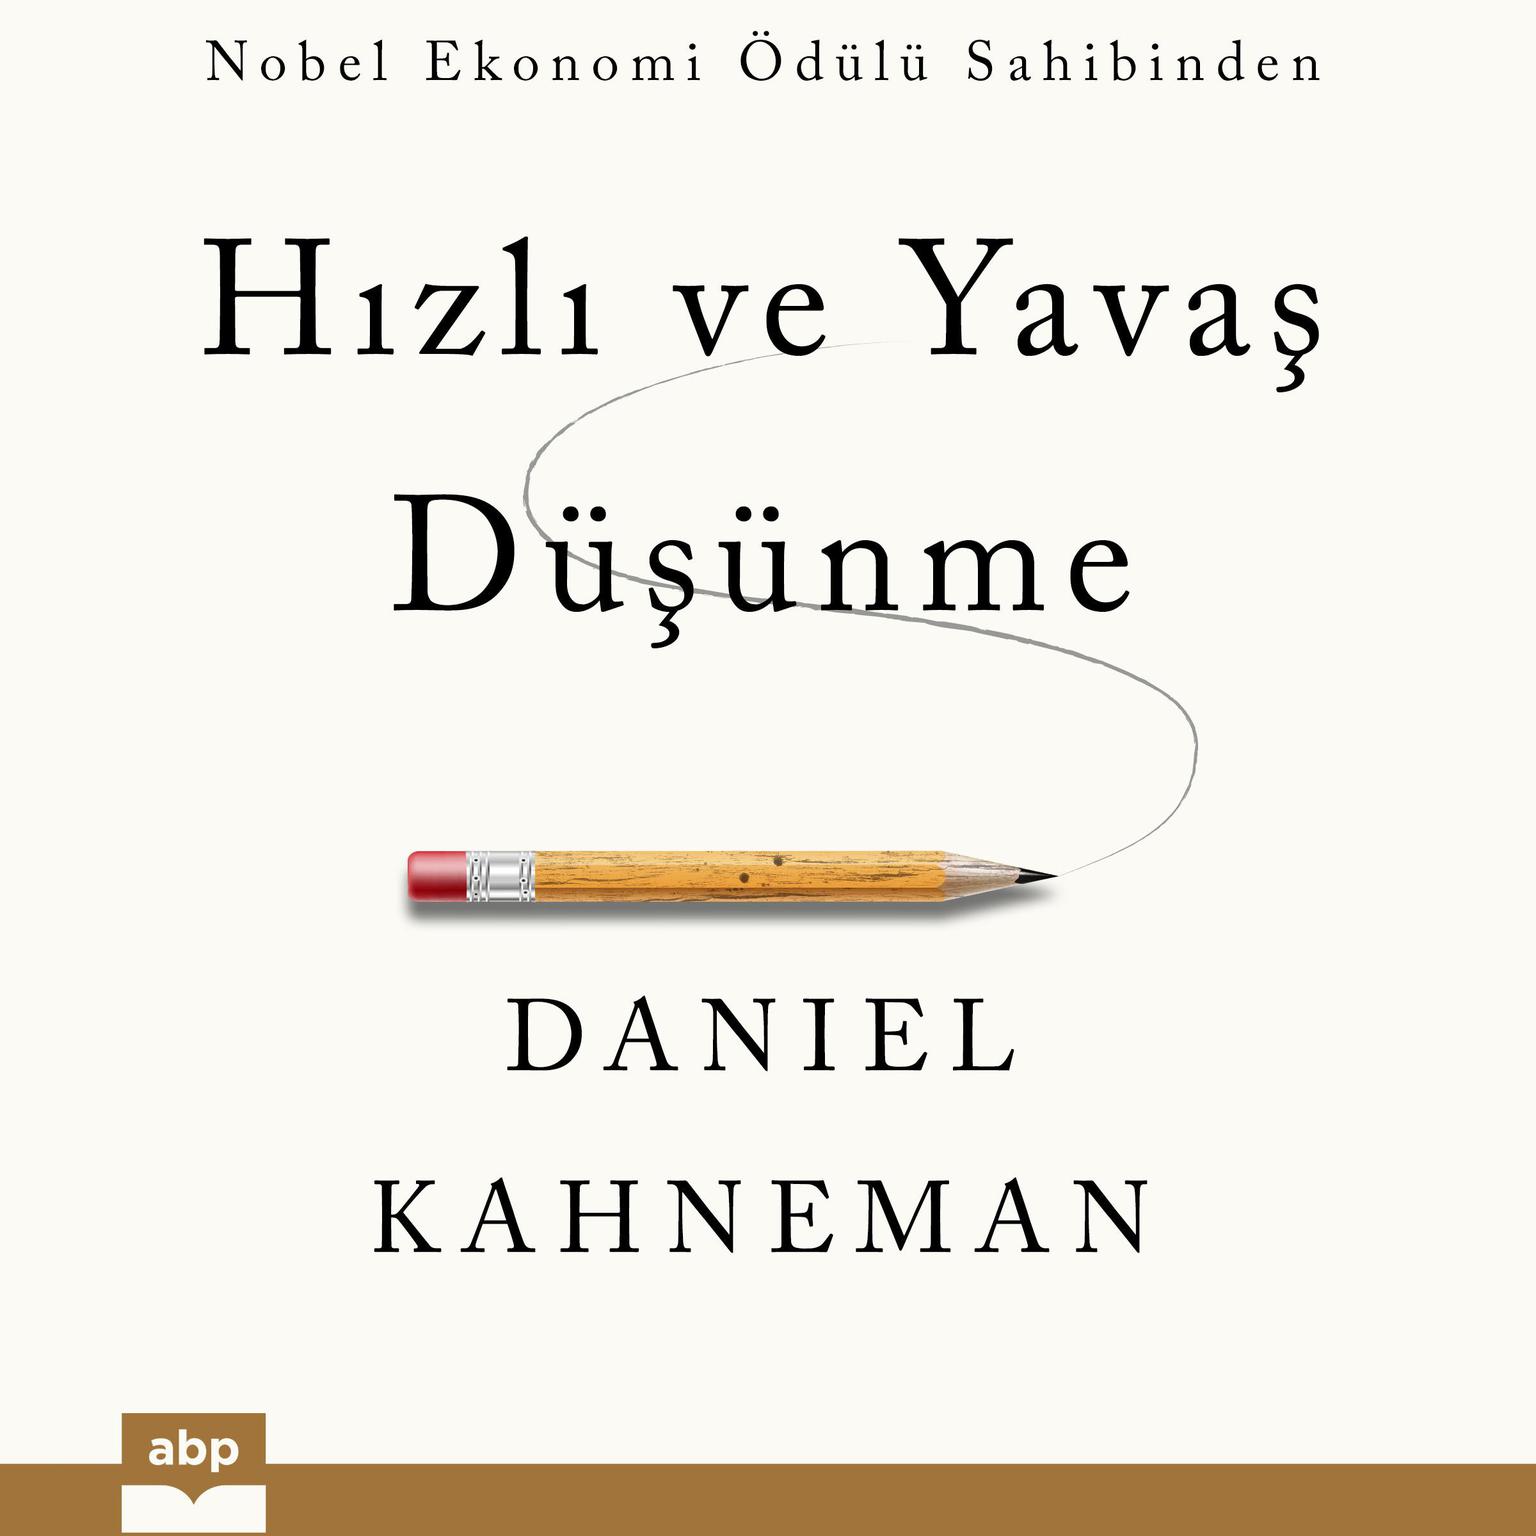 Hizli ve Yavas Düsünme Audiobook, by Daniel Kahneman